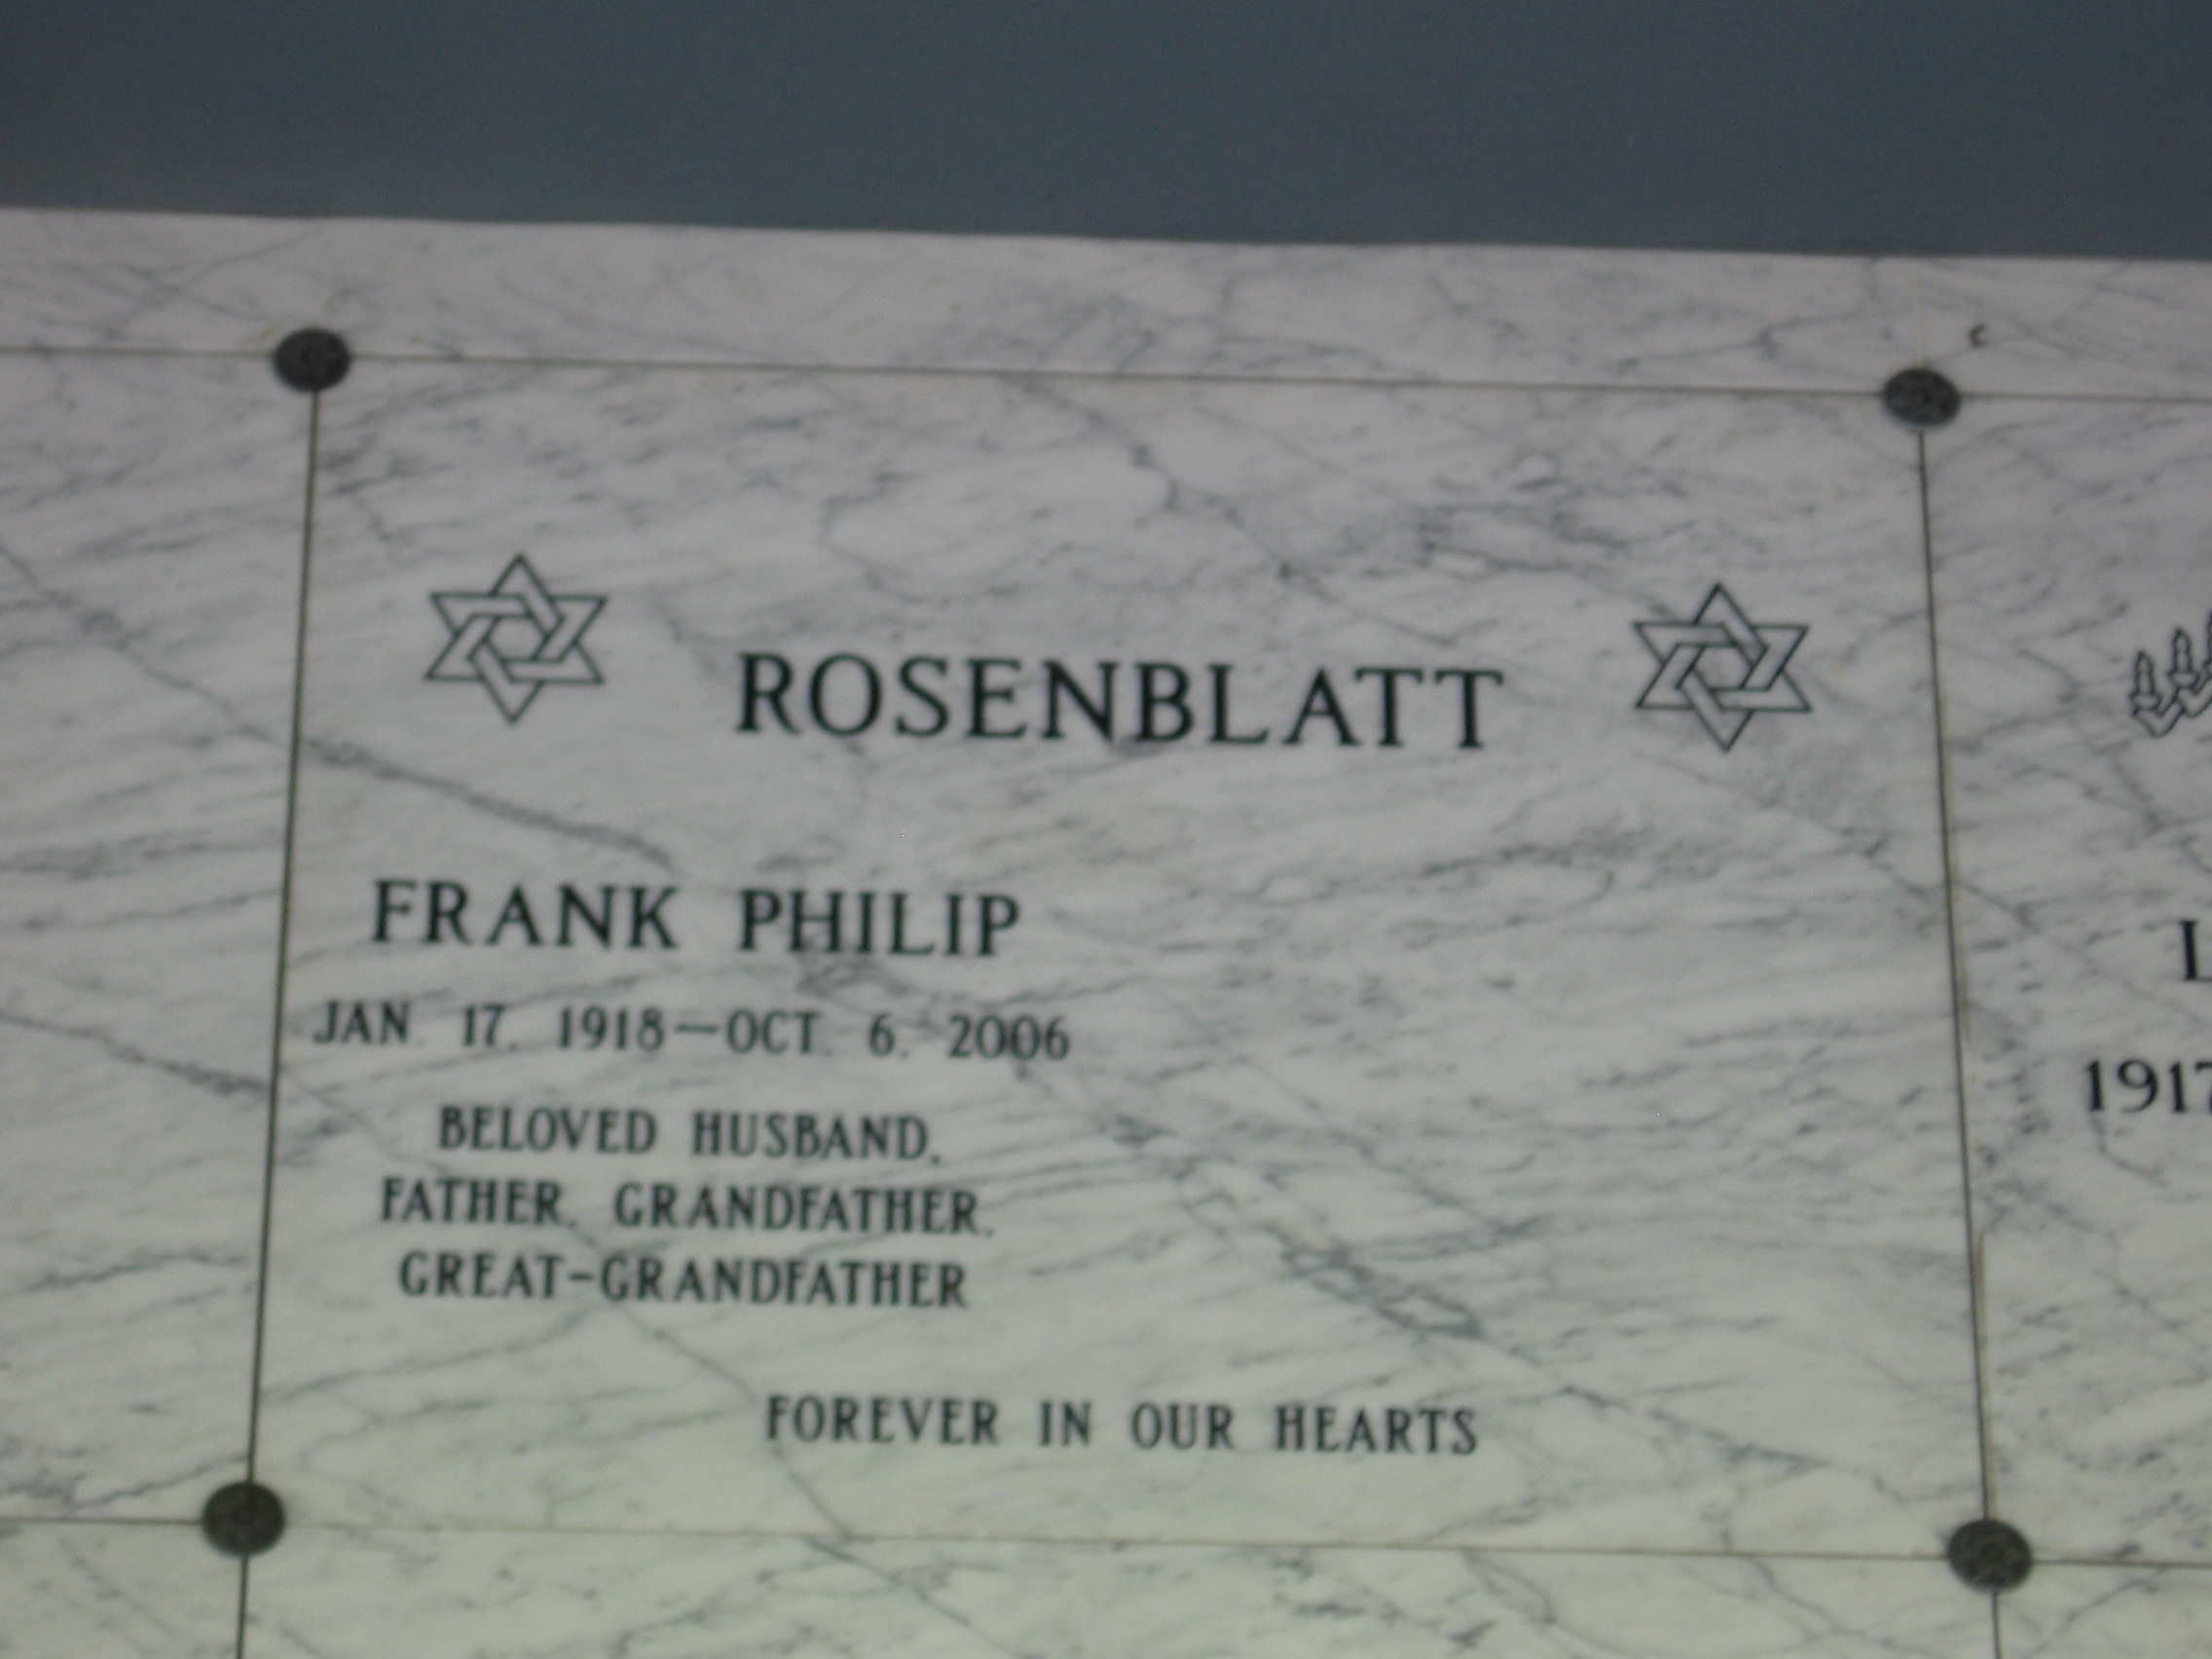 Frank Philip Rosenblatt